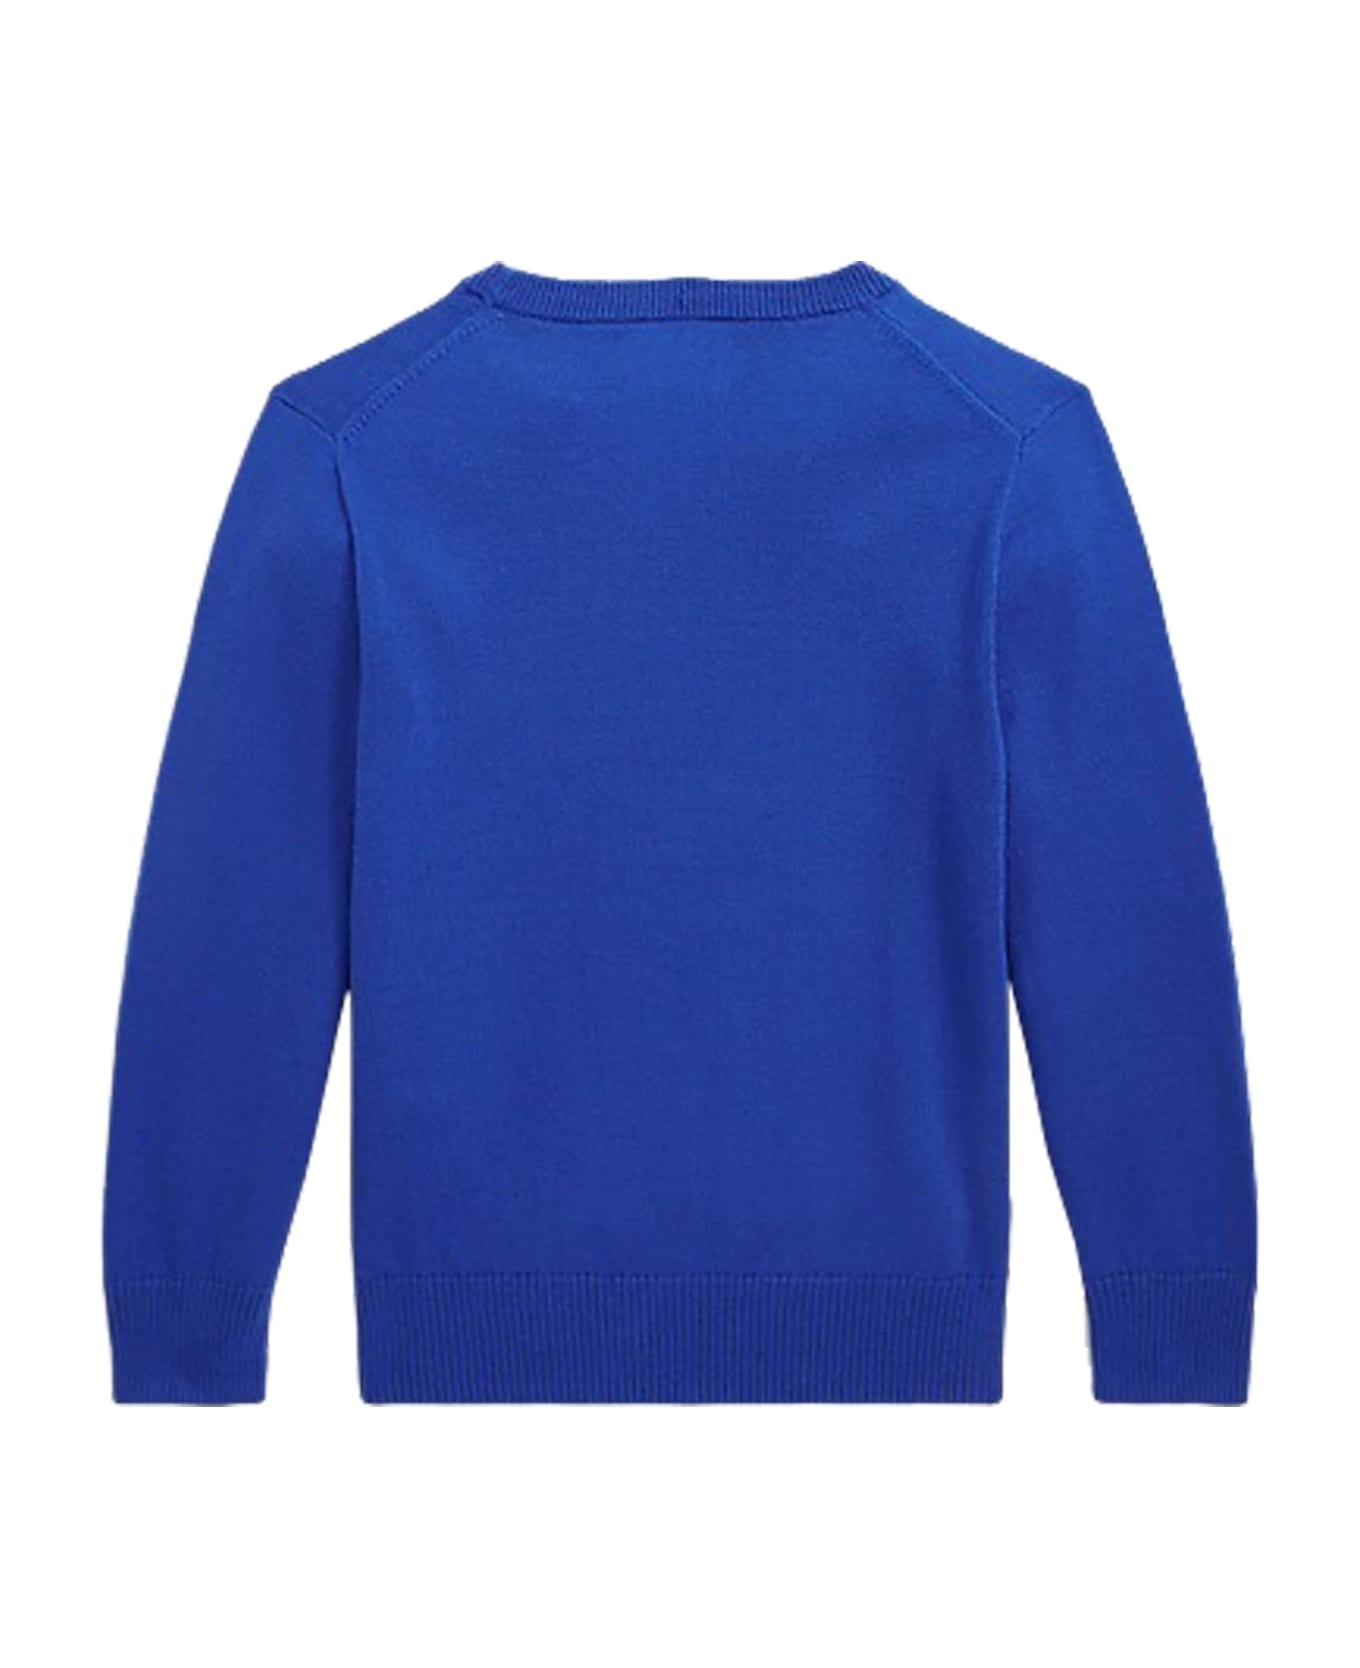 Ralph Lauren Cotton Sweater - Blue